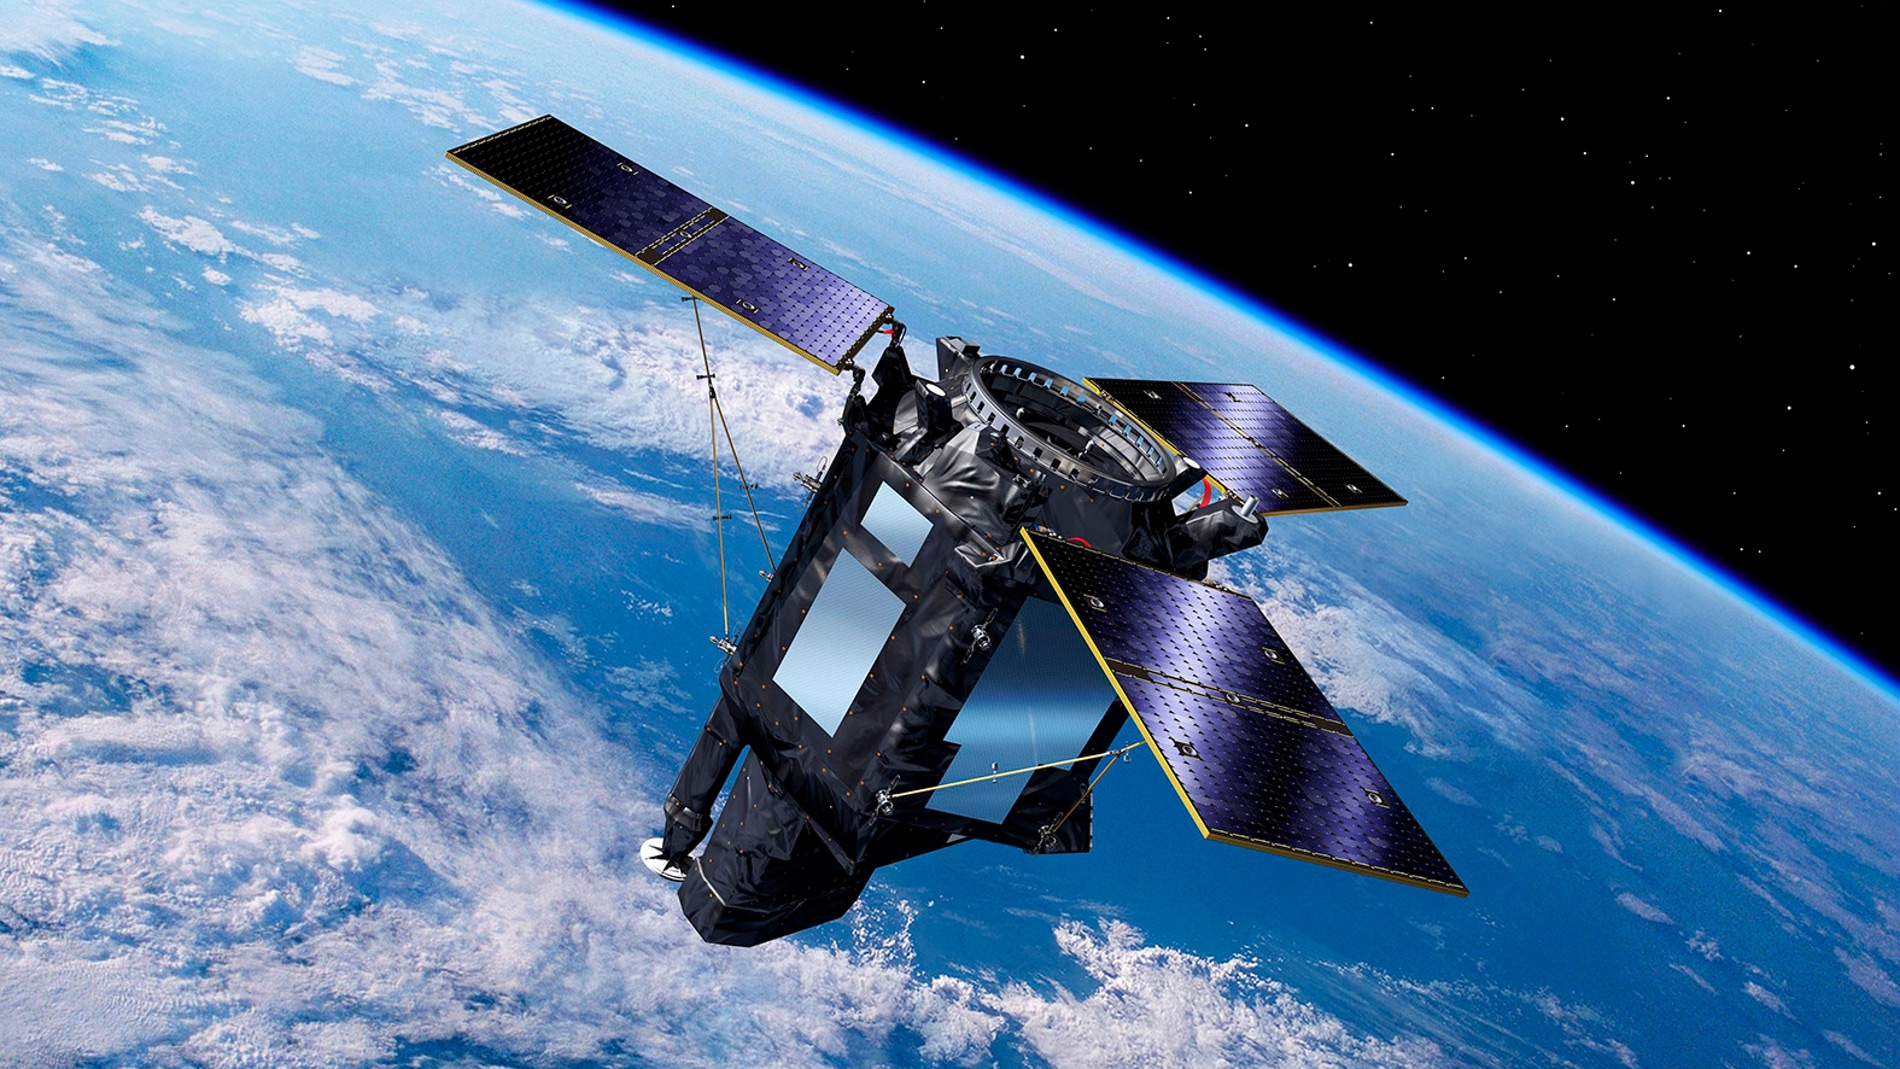 Inminente lanzamiento del satelite espanol Ingenio de observacion de la Tierra